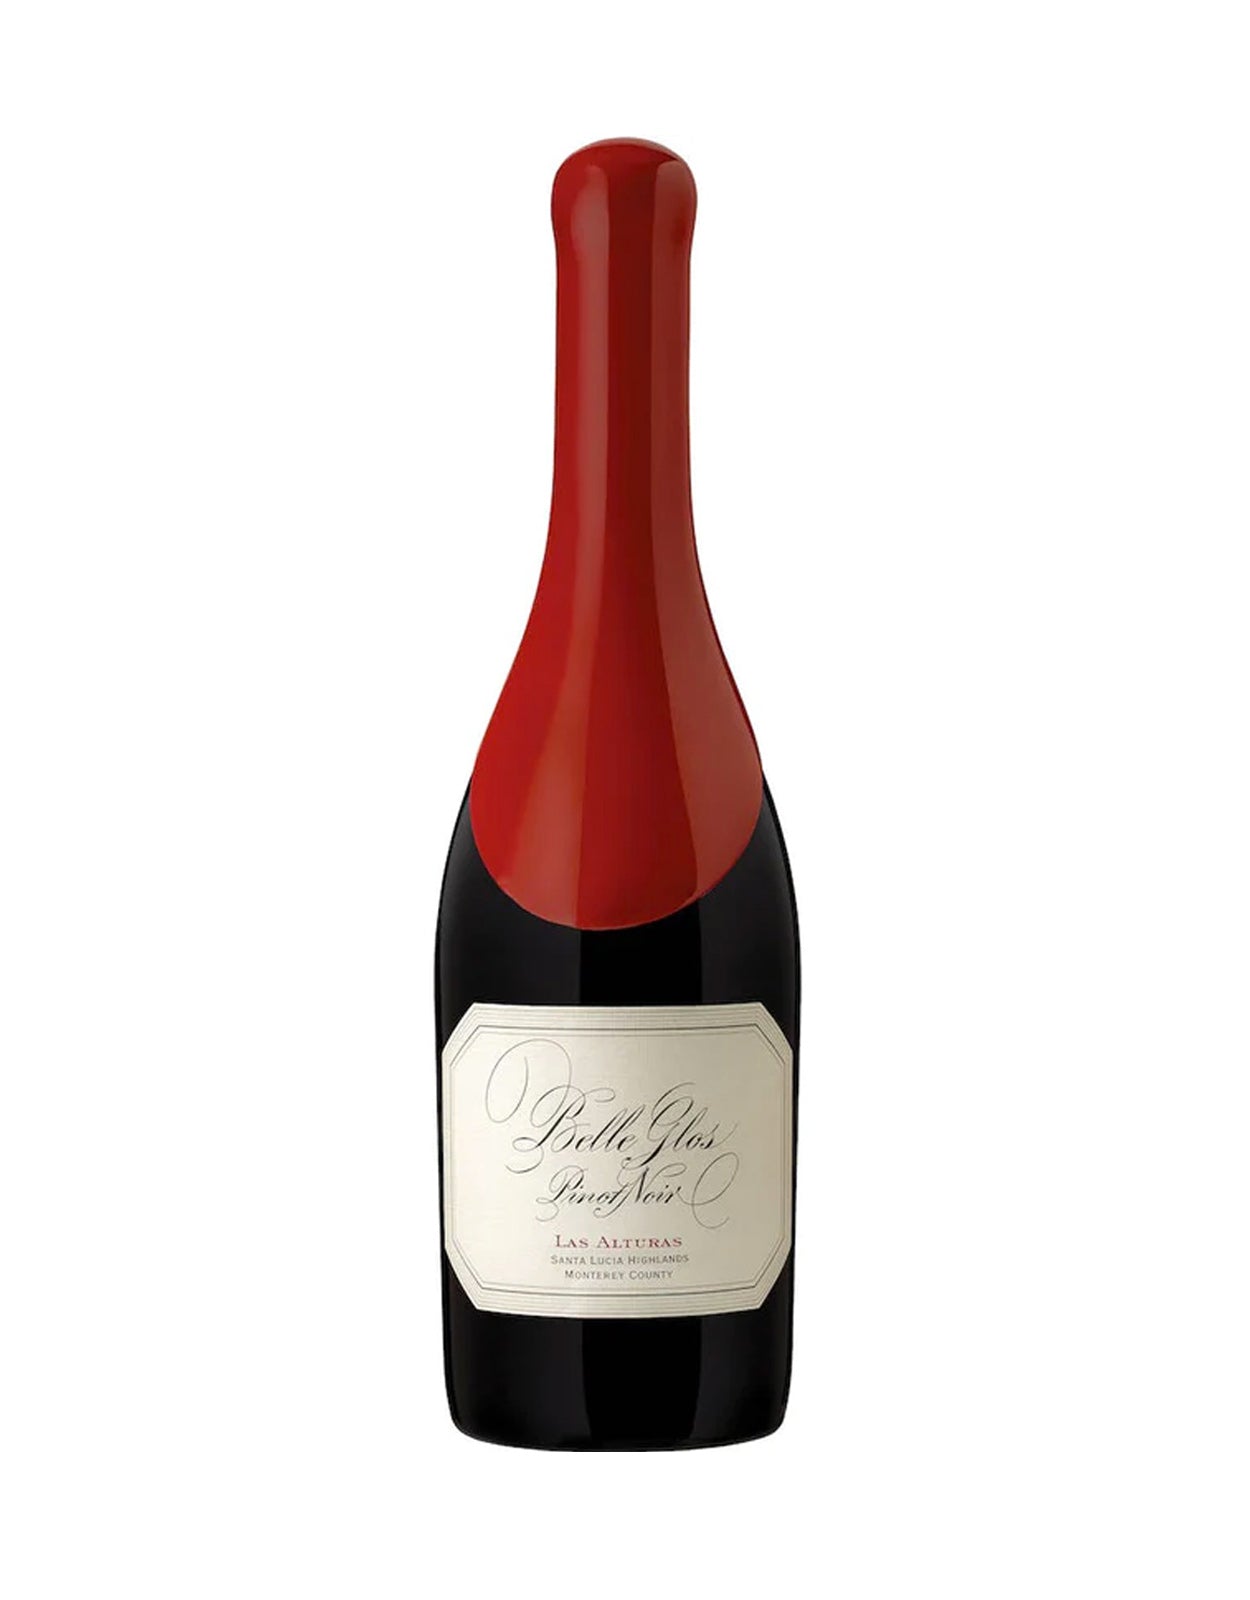 Belle Glos Pinot Noir Las Alturas 2018 - 1.5 Litre Bottle